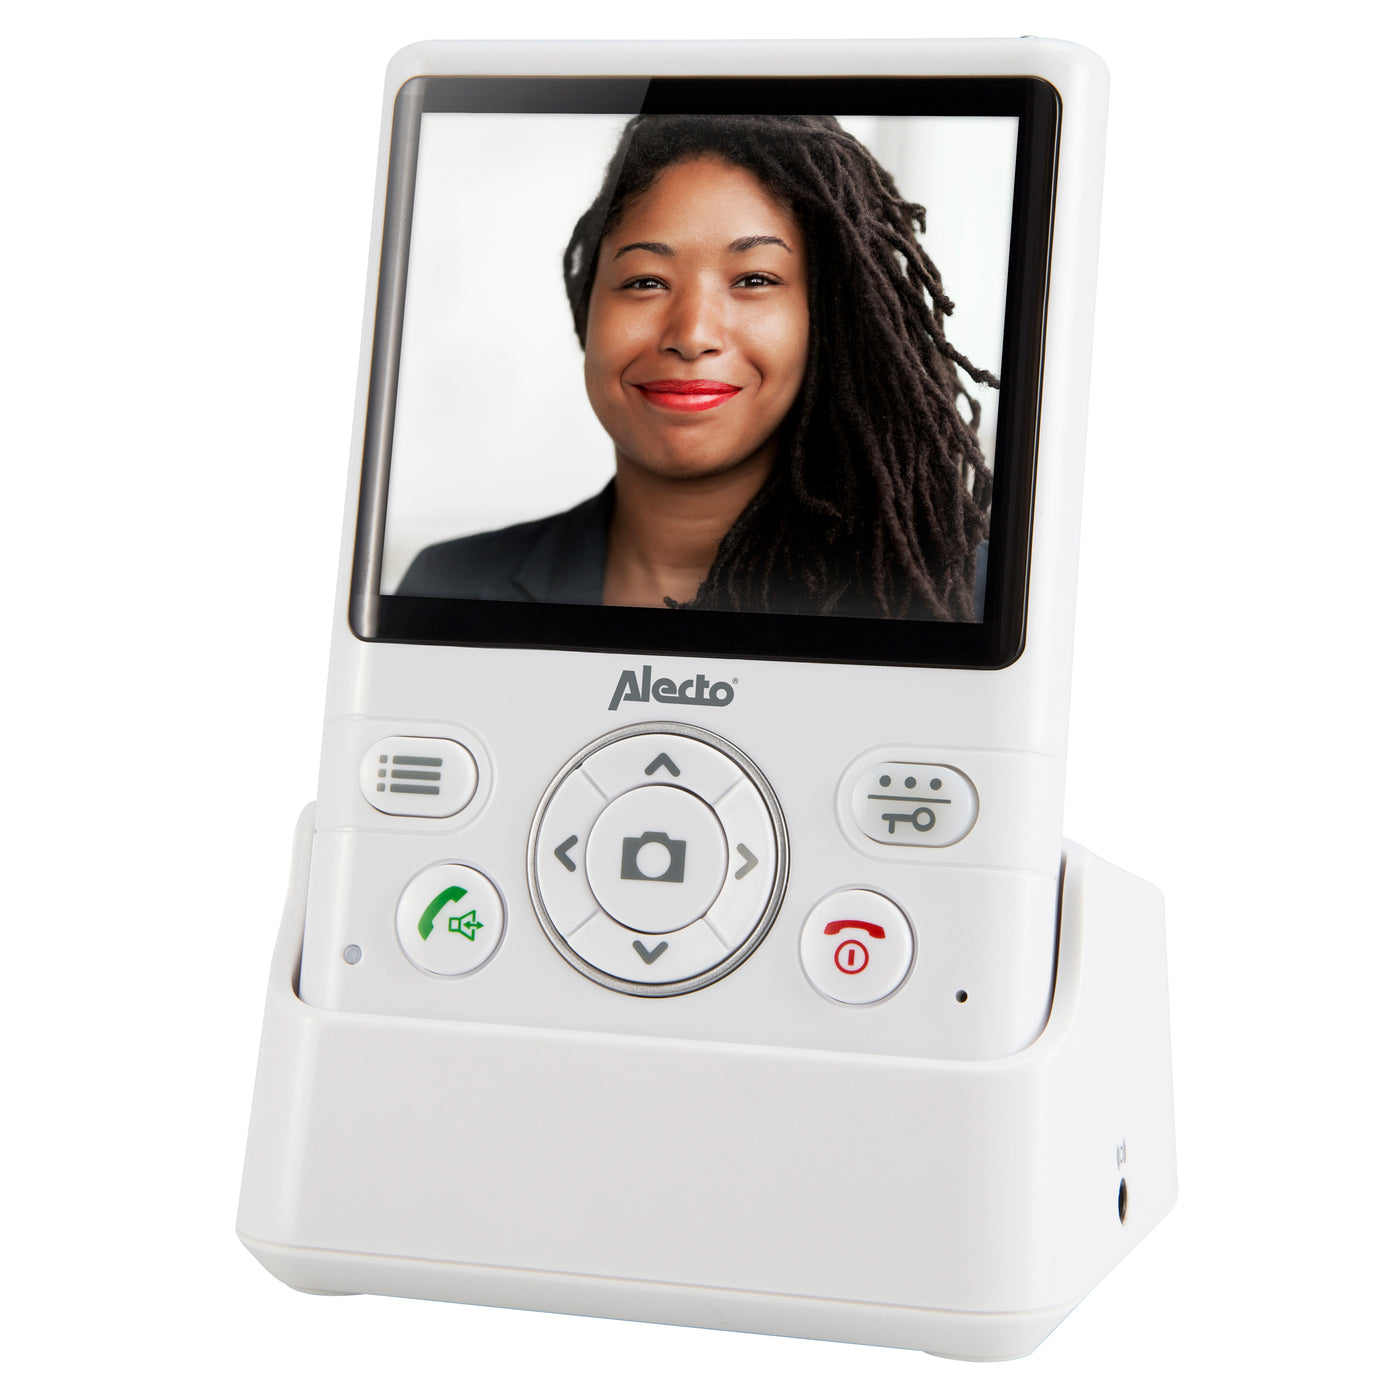 Alecto ADI-250 - Sonnette intercom avec caméra et écran couleurs 3.5", blanc/argent